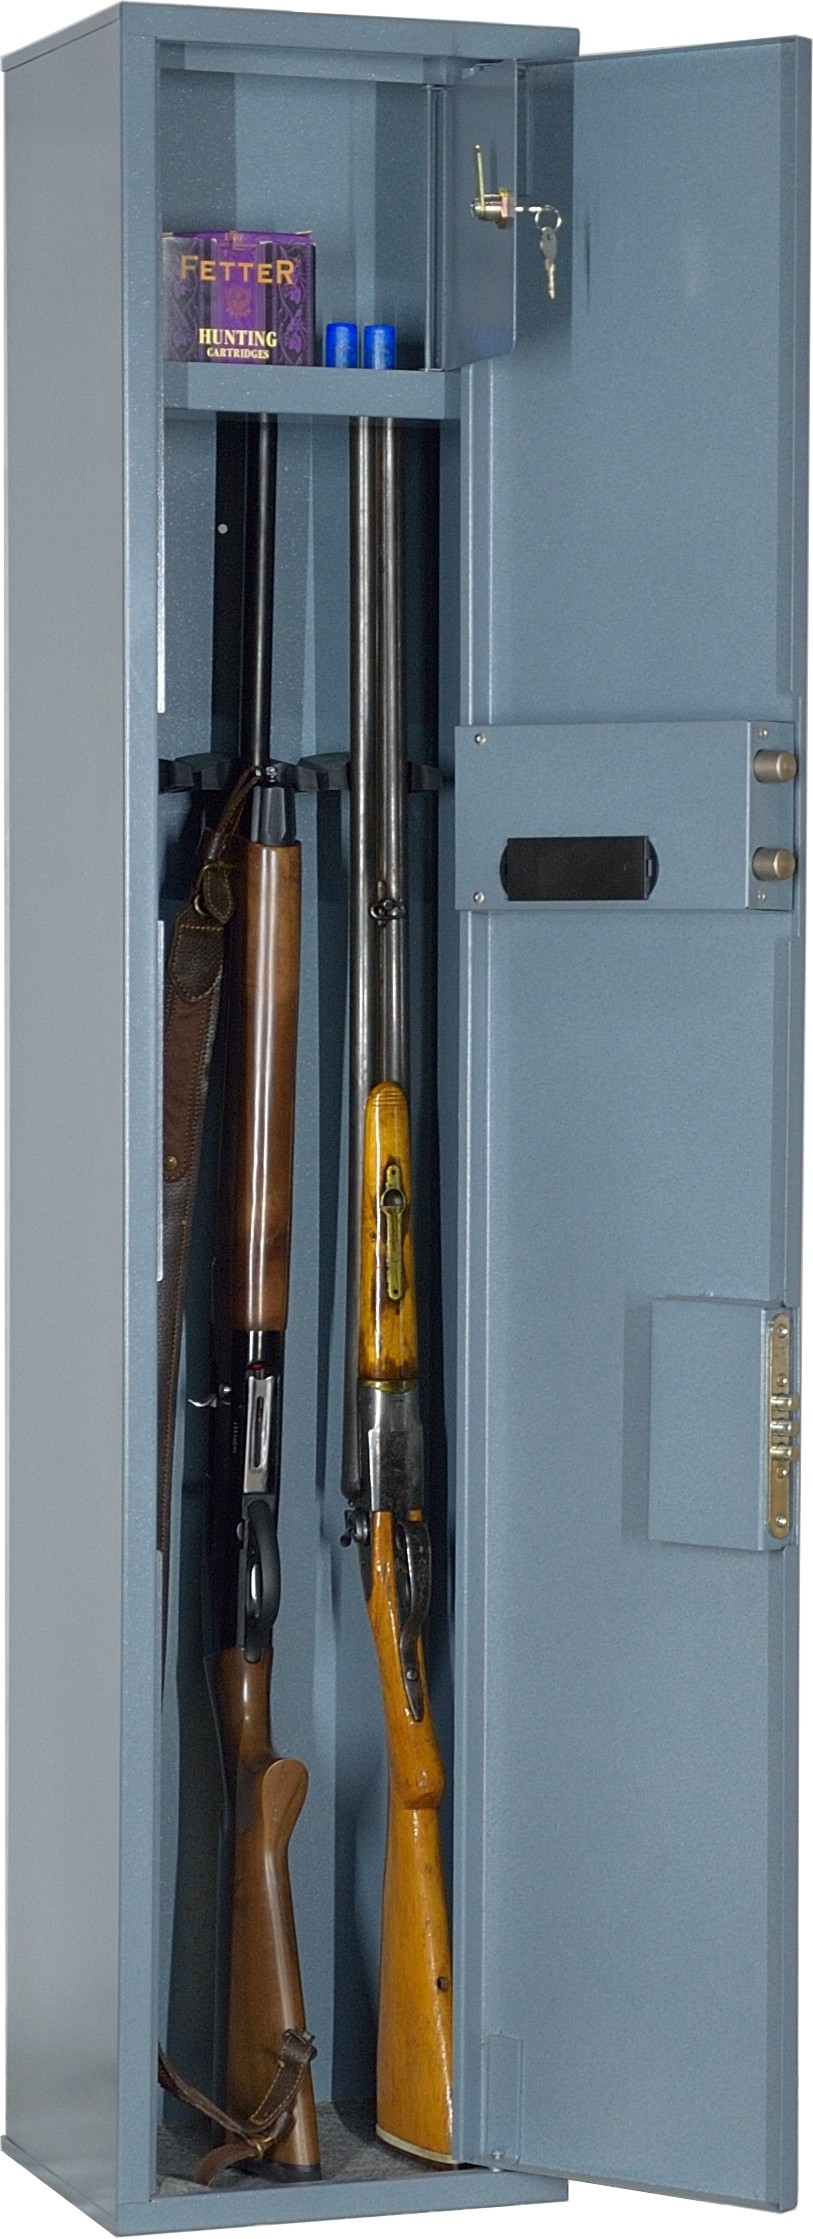 Оружейный шкаф Меткон ошн-3